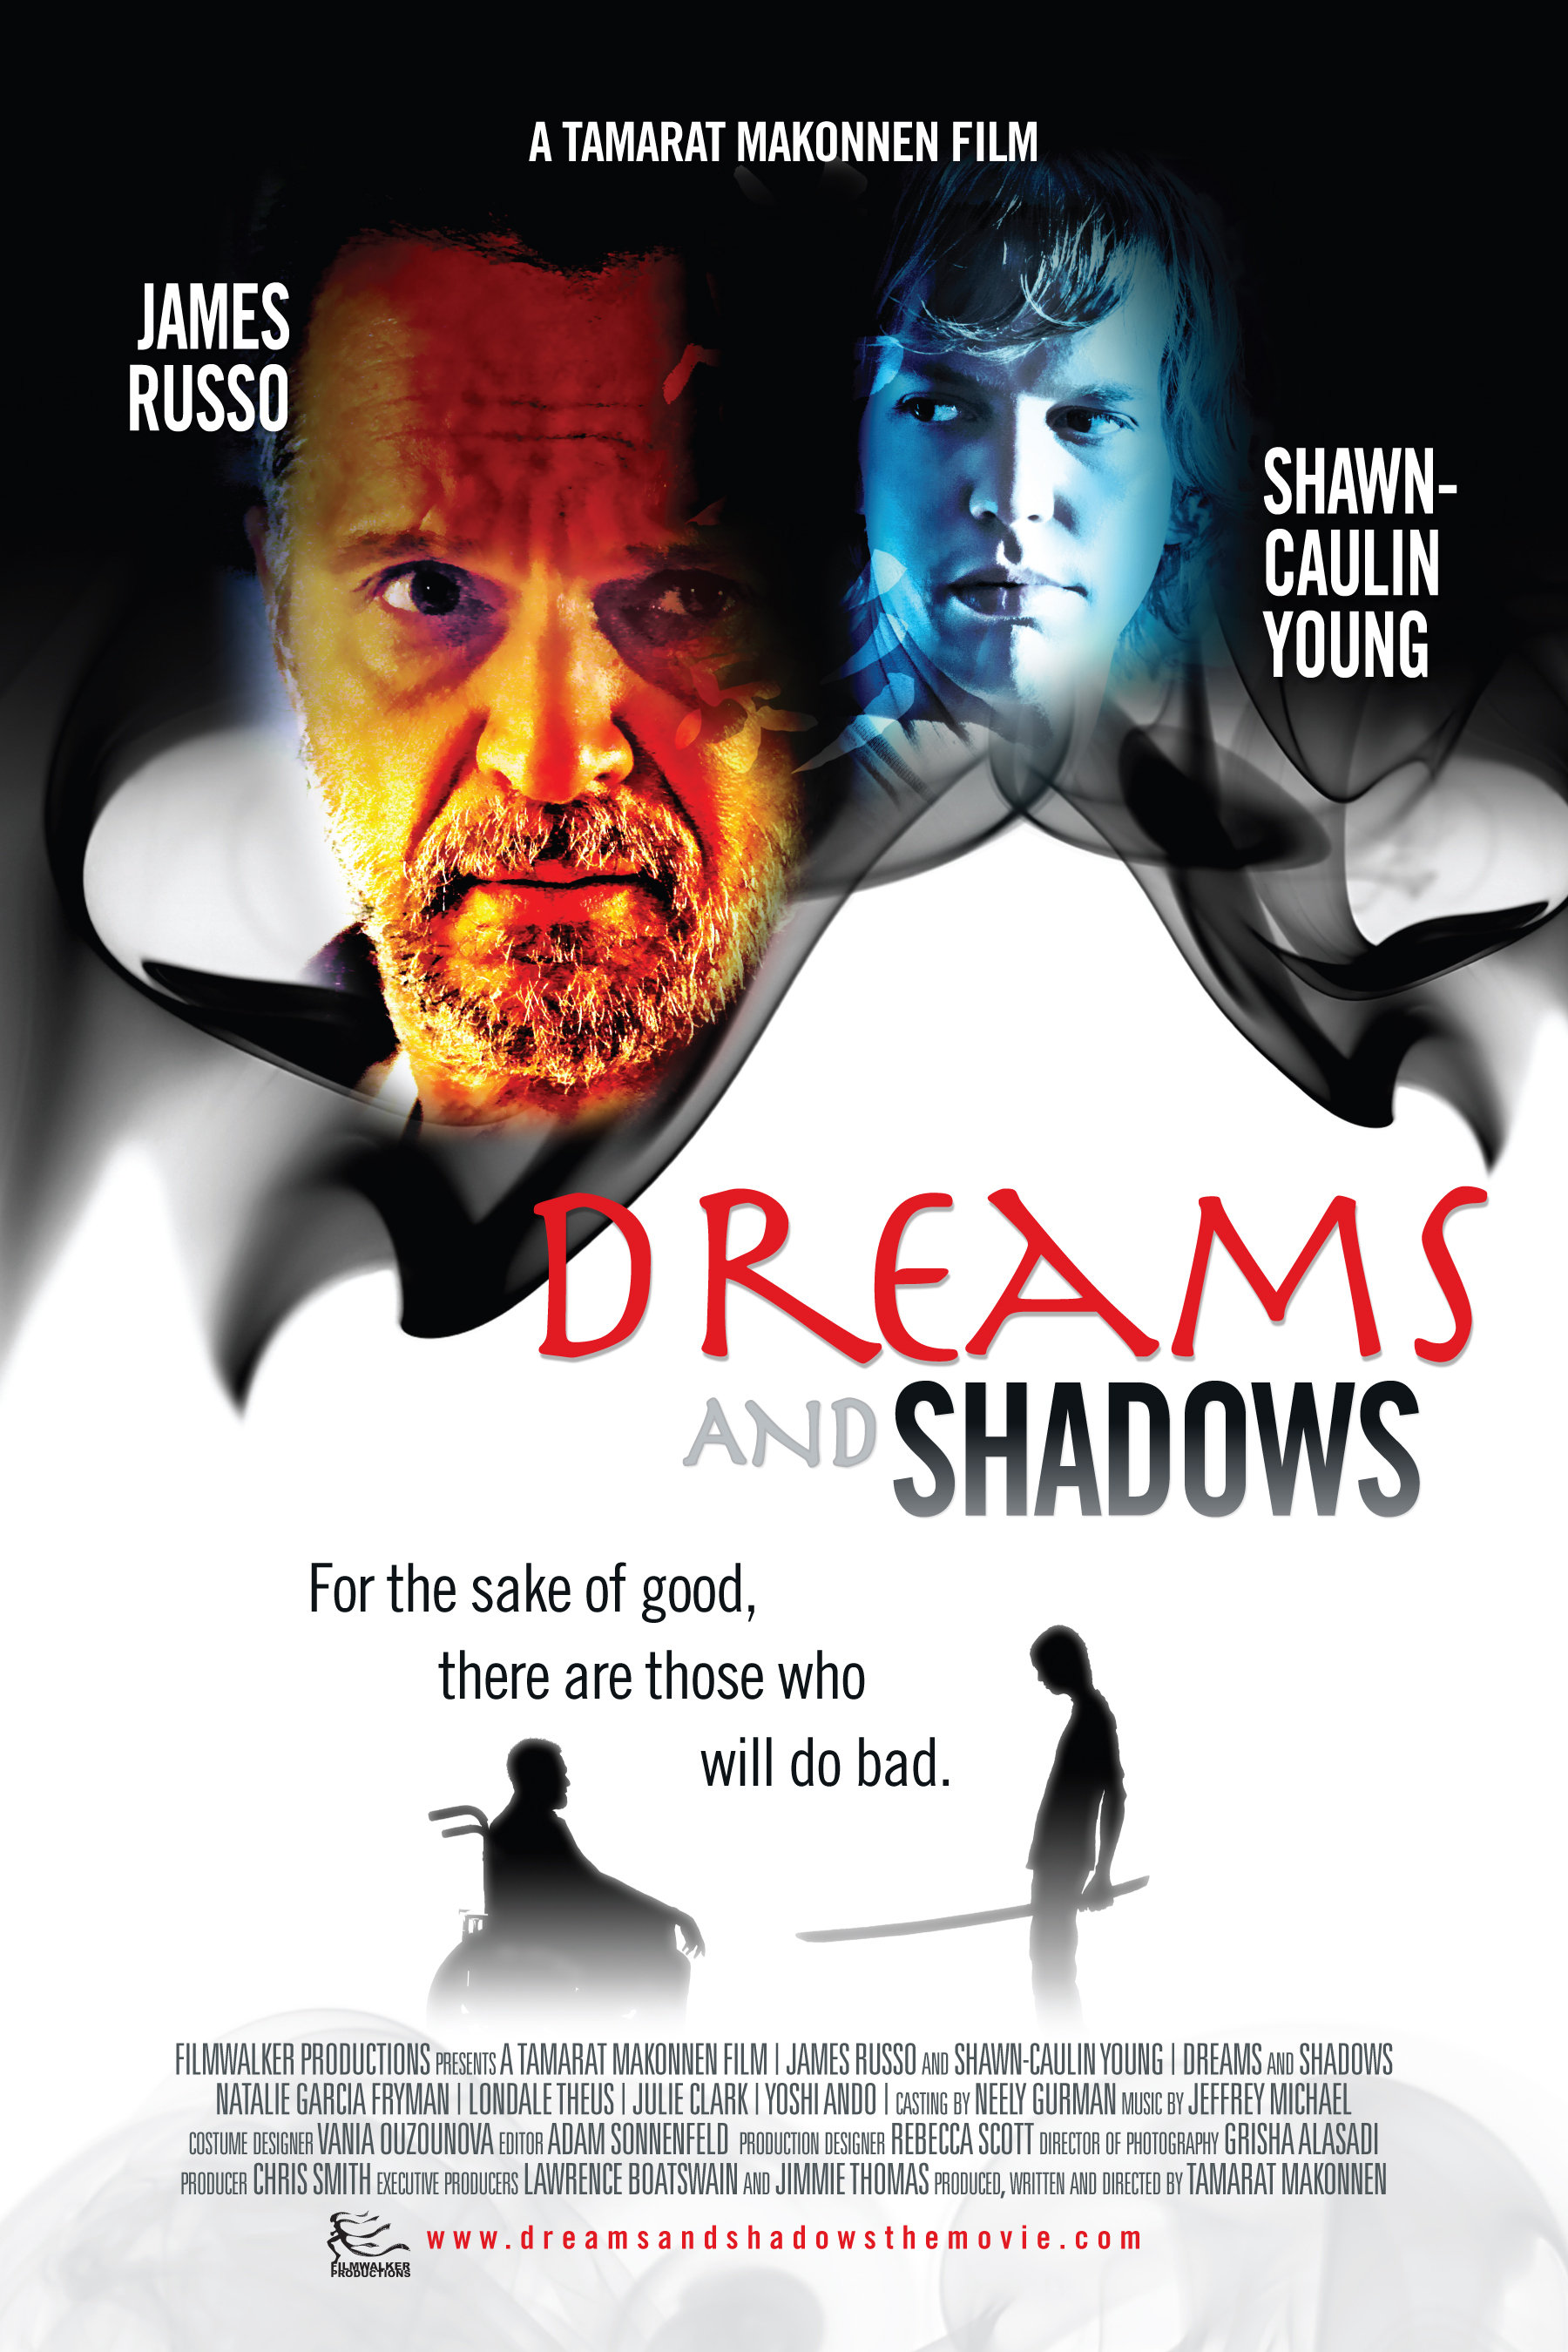 Dreams and Shadows (2009) Screenshot 1